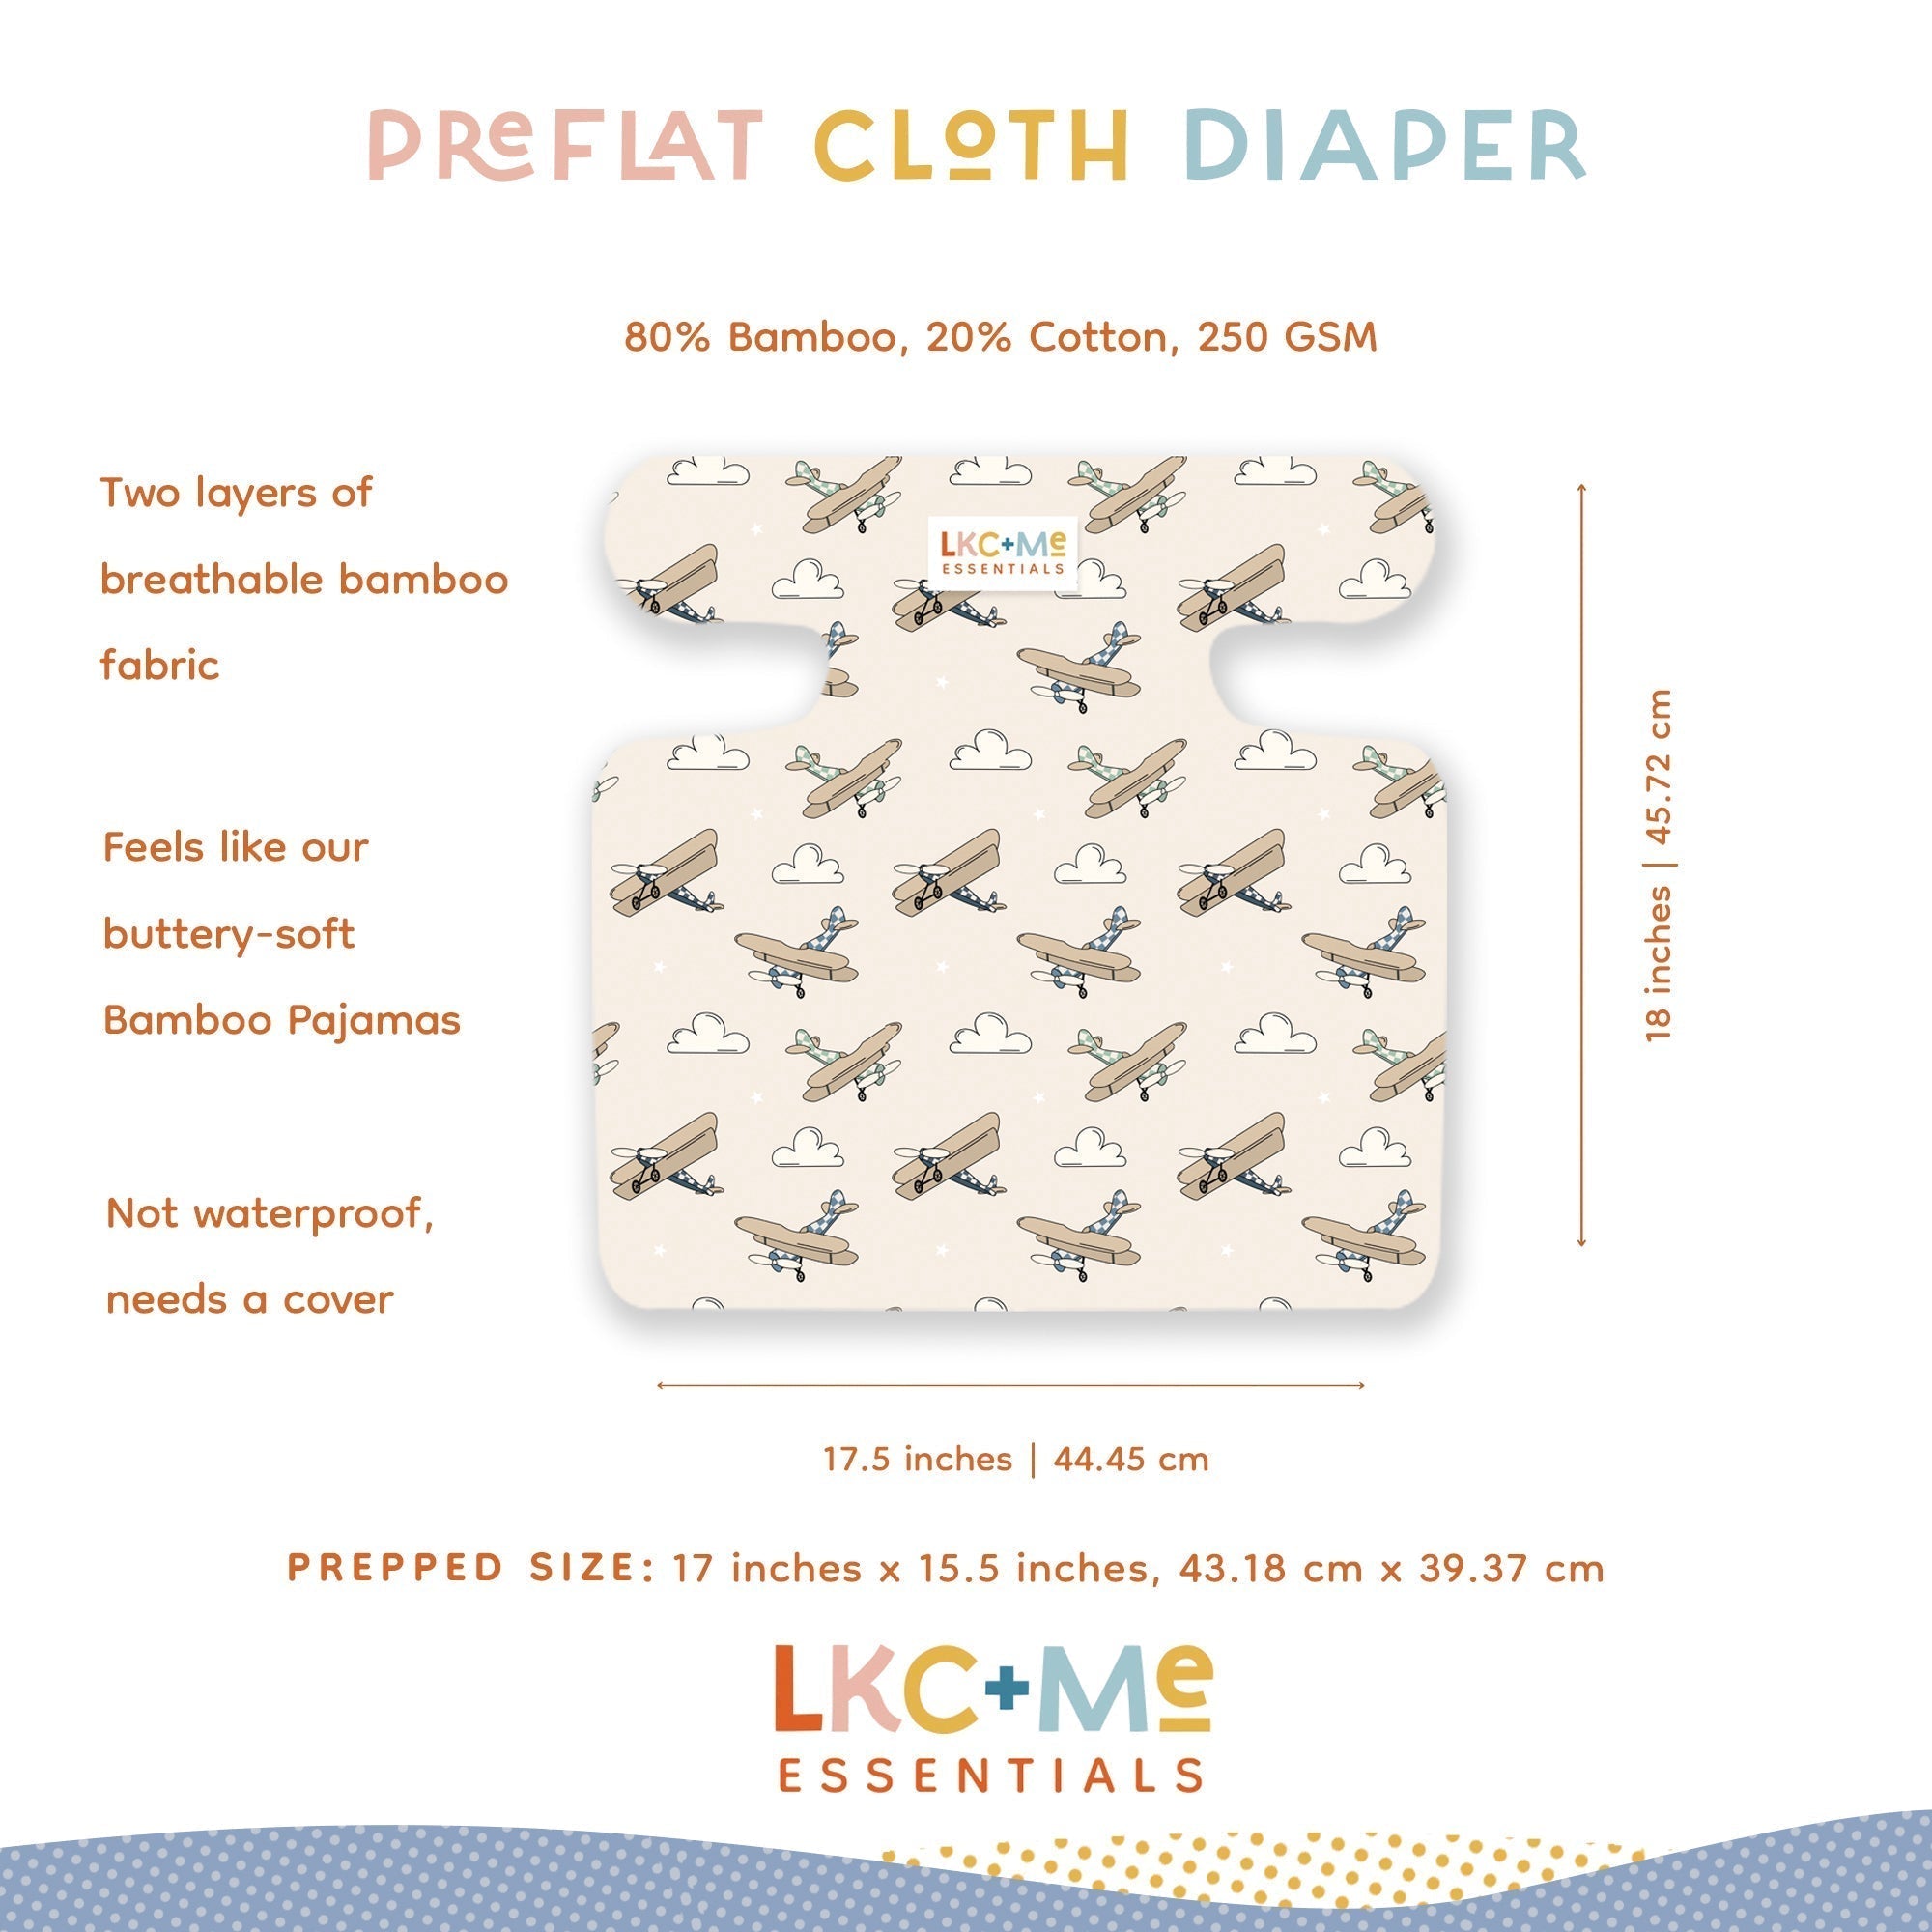 preflat_cloth_diaper